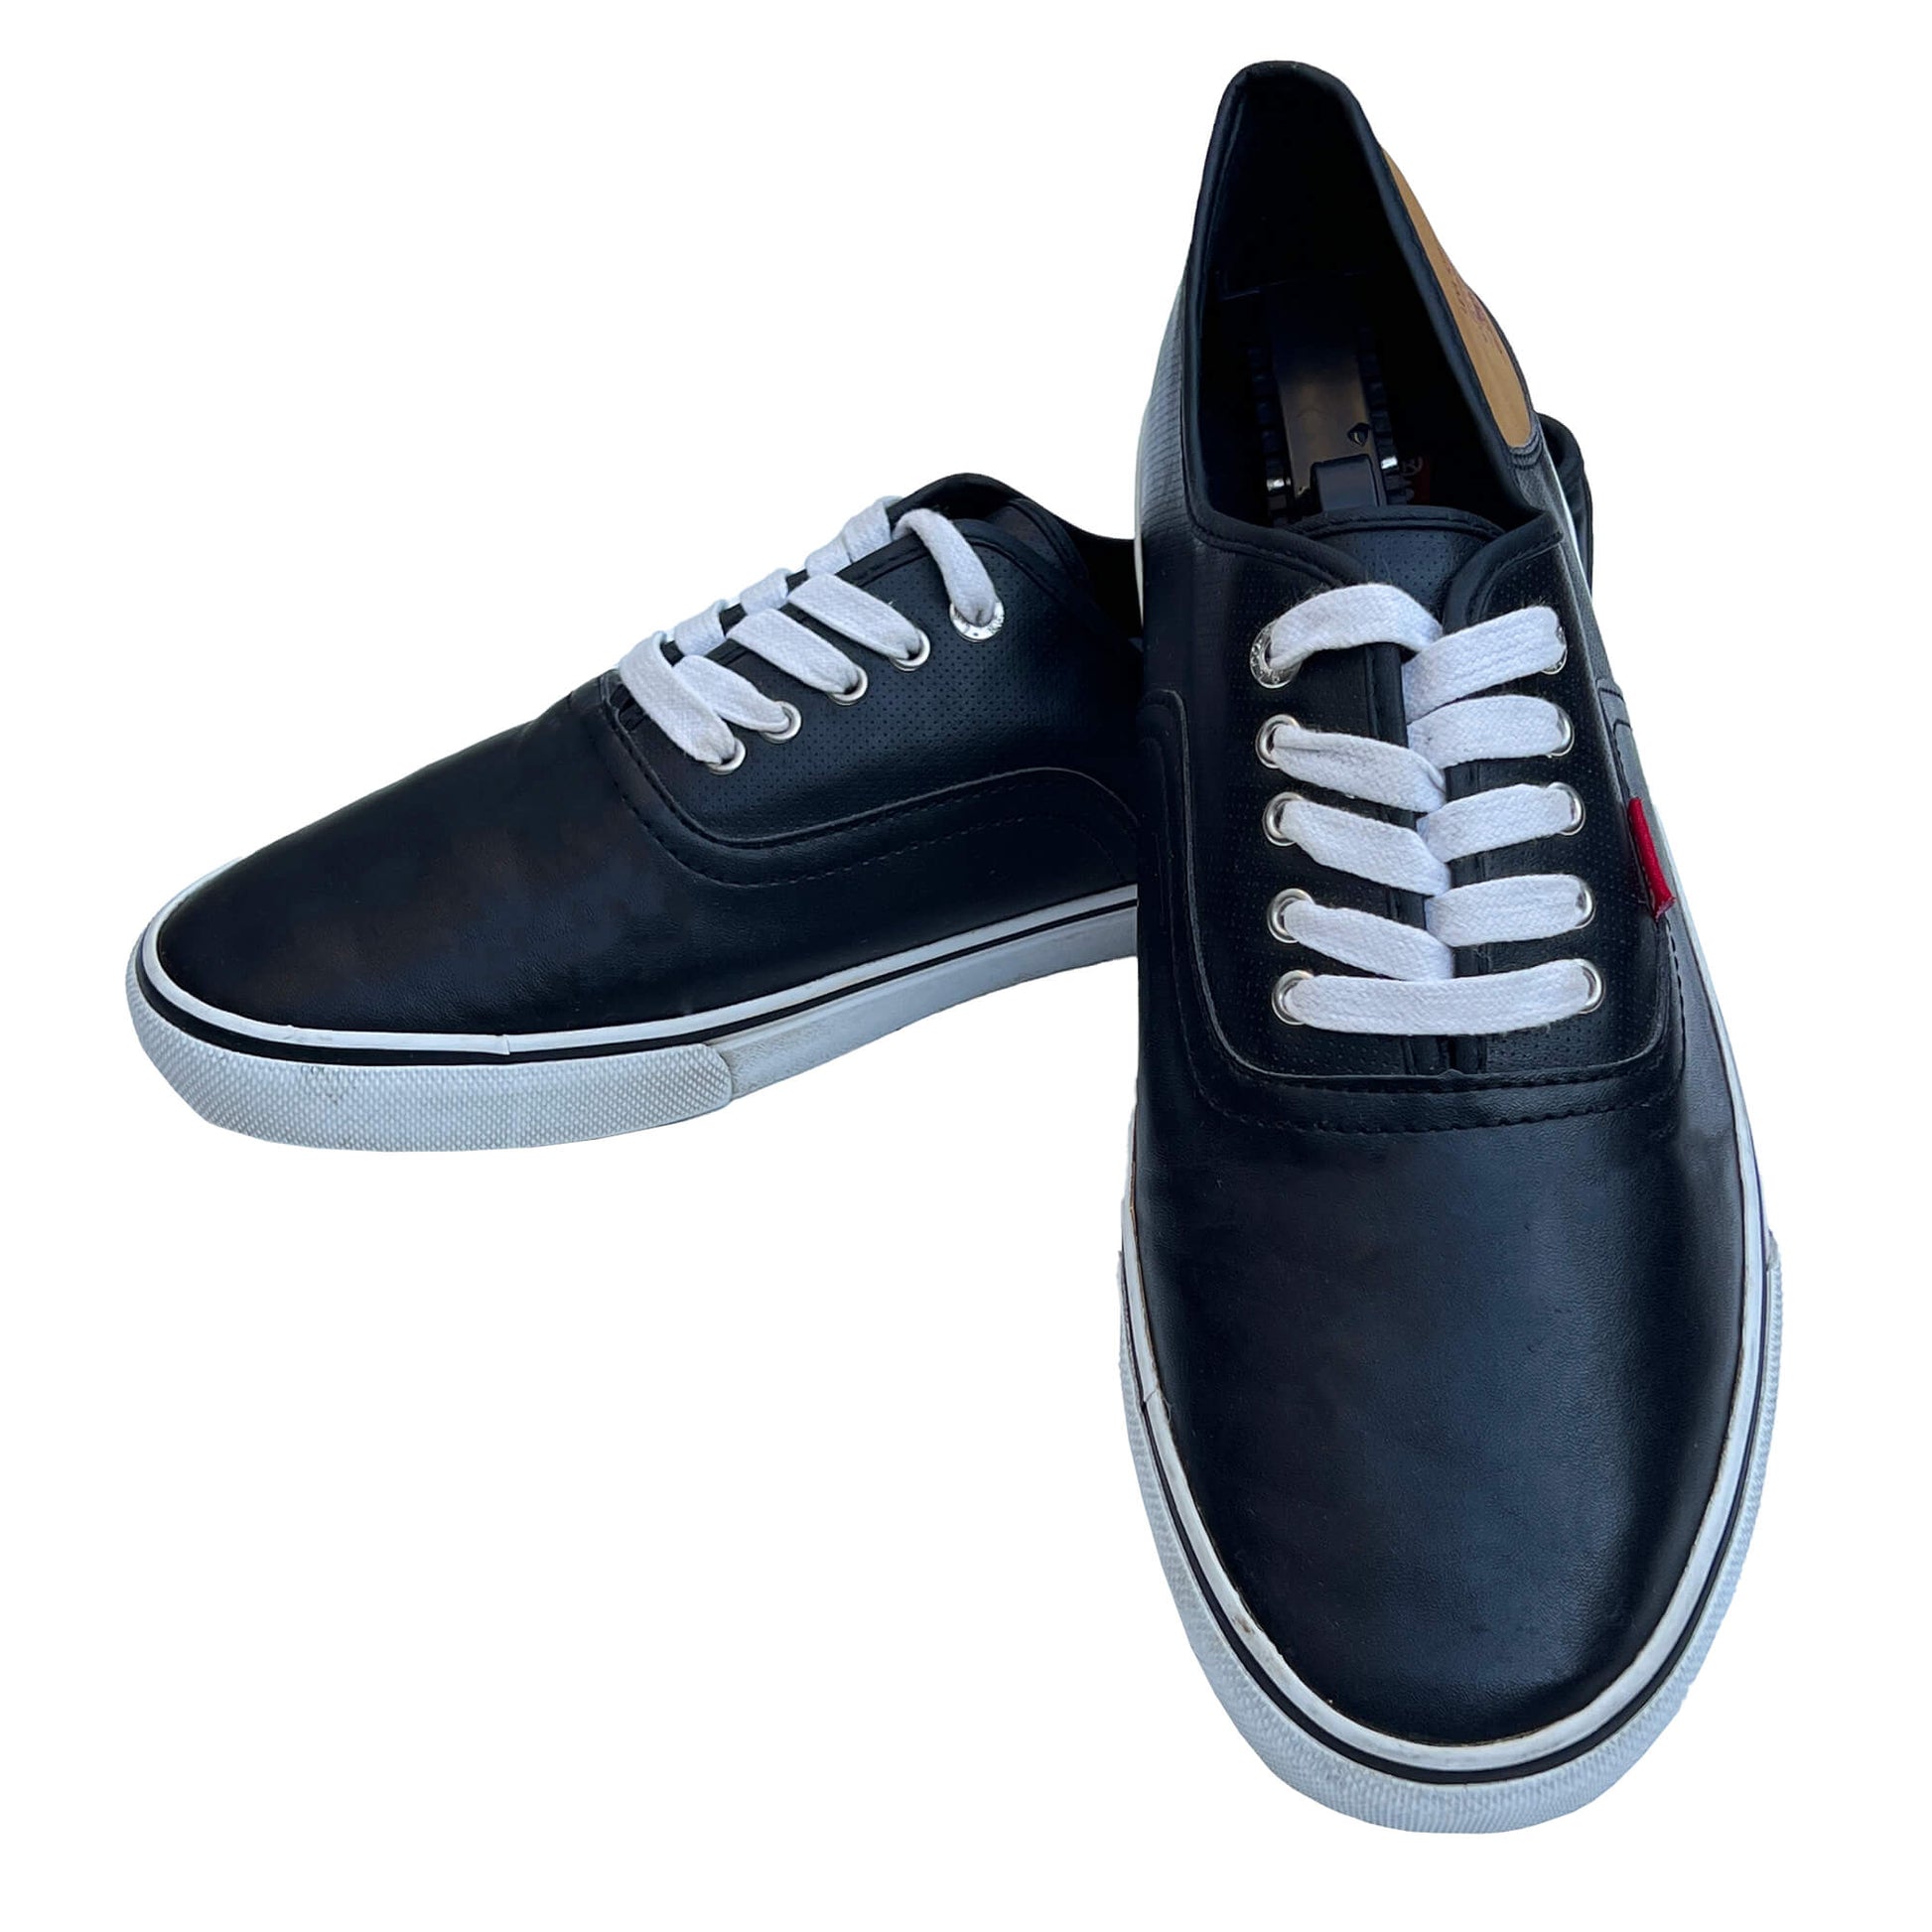 Men_s-Black-Faux-Leather-Sneakers-Shoes.-Size-13.-Shop-eBargainsAndDeals,com